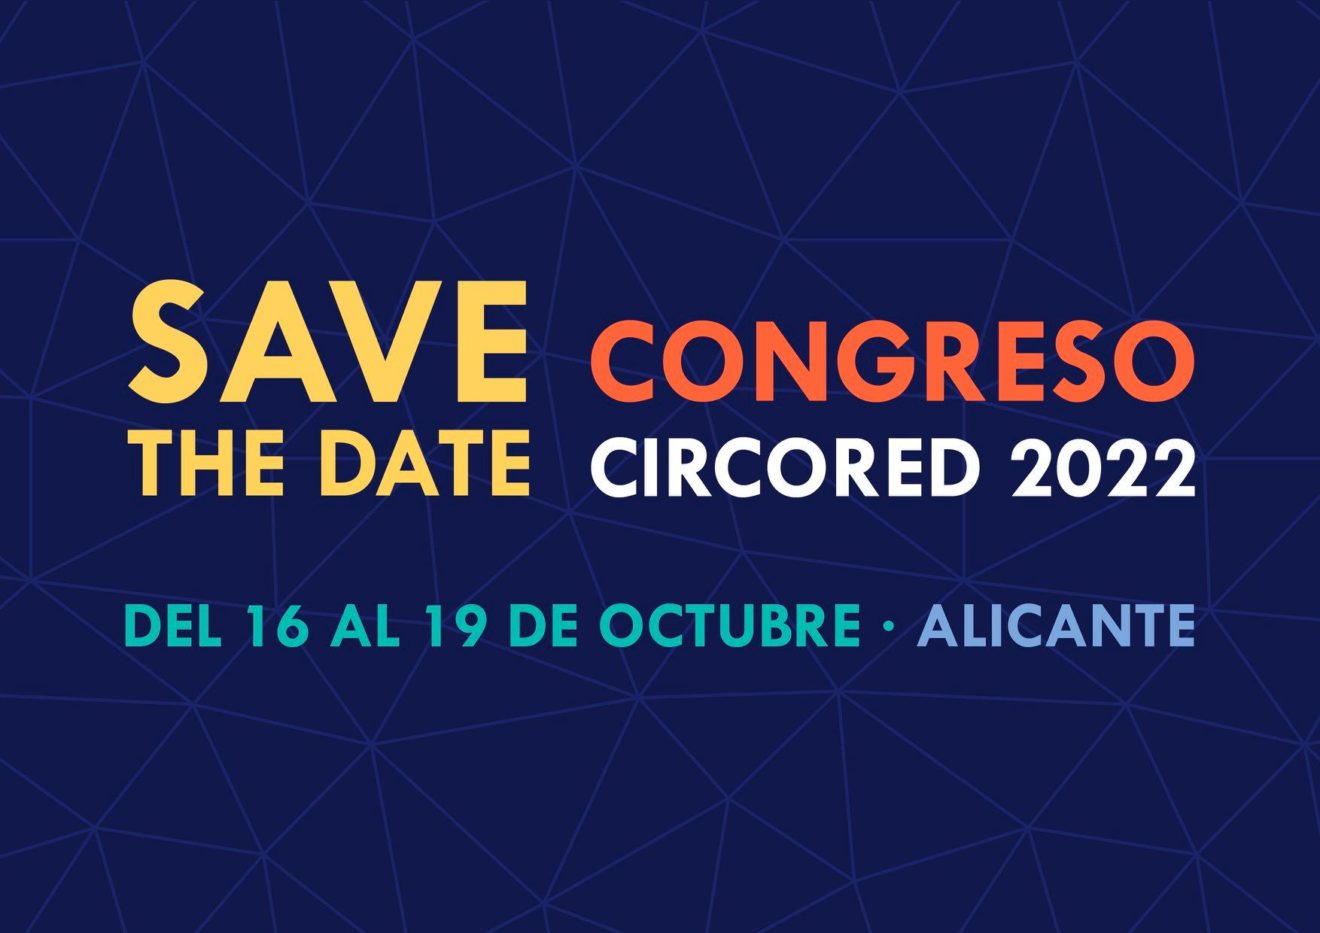 El Festival Circarte y el IV Congreso CircoRED sucederán a la par éste 2022